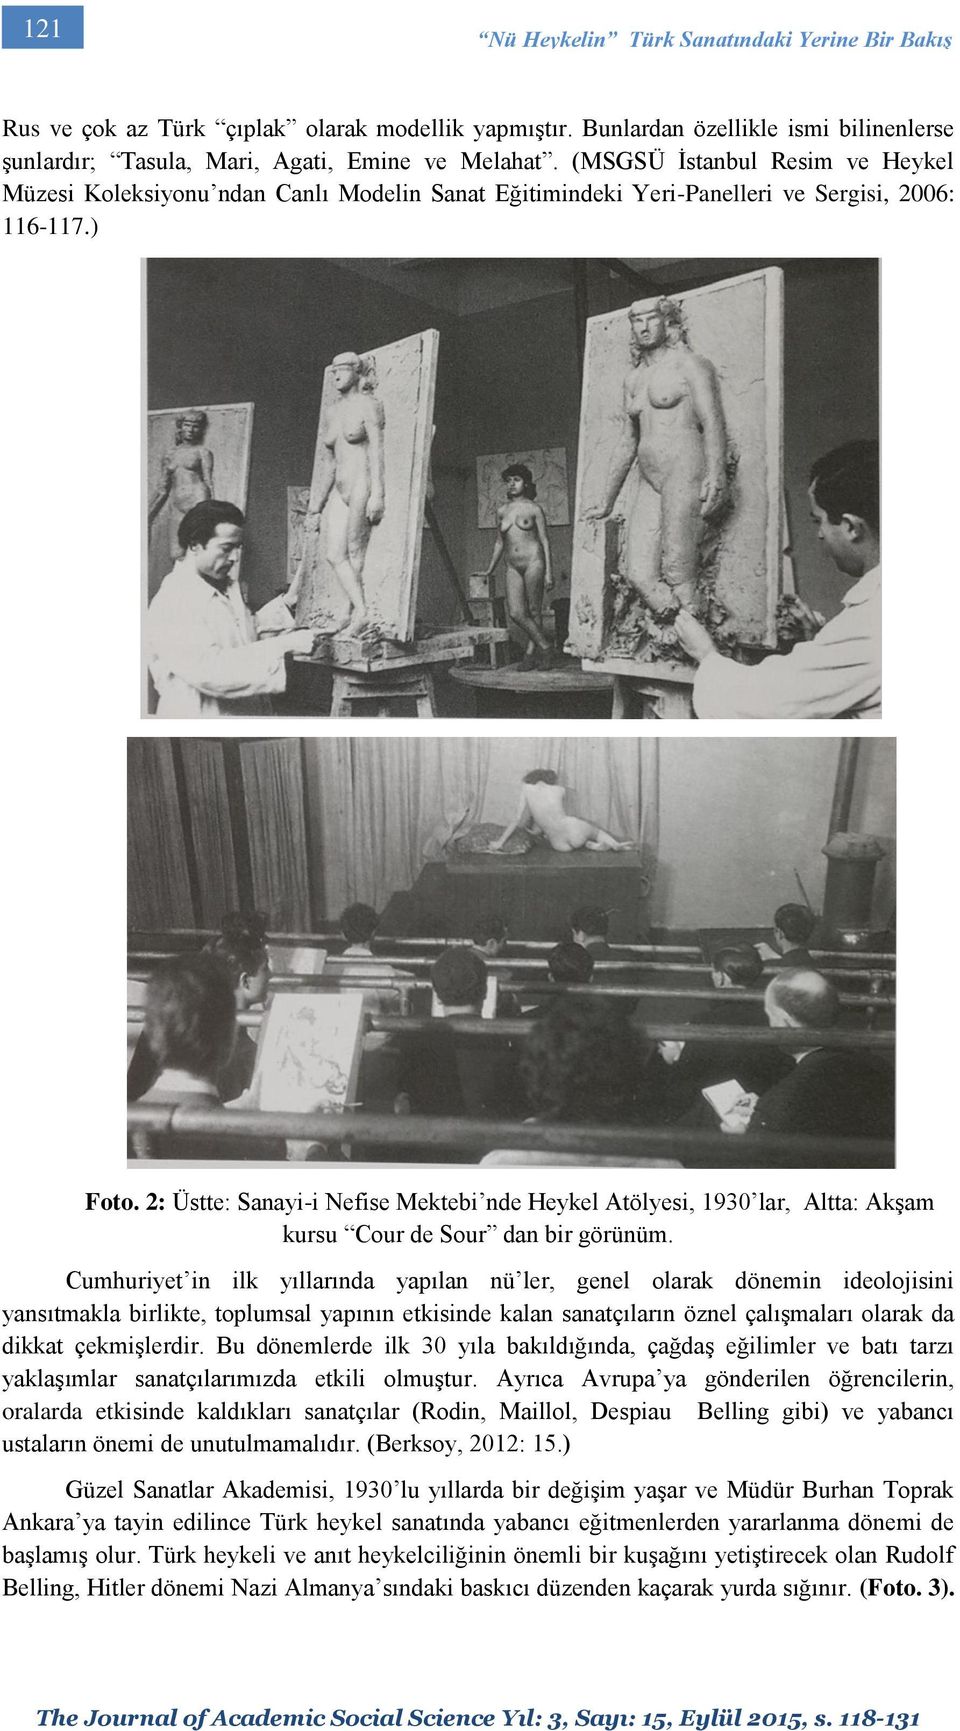 2: Üstte: Sanayi-i Nefise Mektebi nde Heykel Atölyesi, 1930 lar, Altta: Akşam kursu Cour de Sour dan bir görünüm.